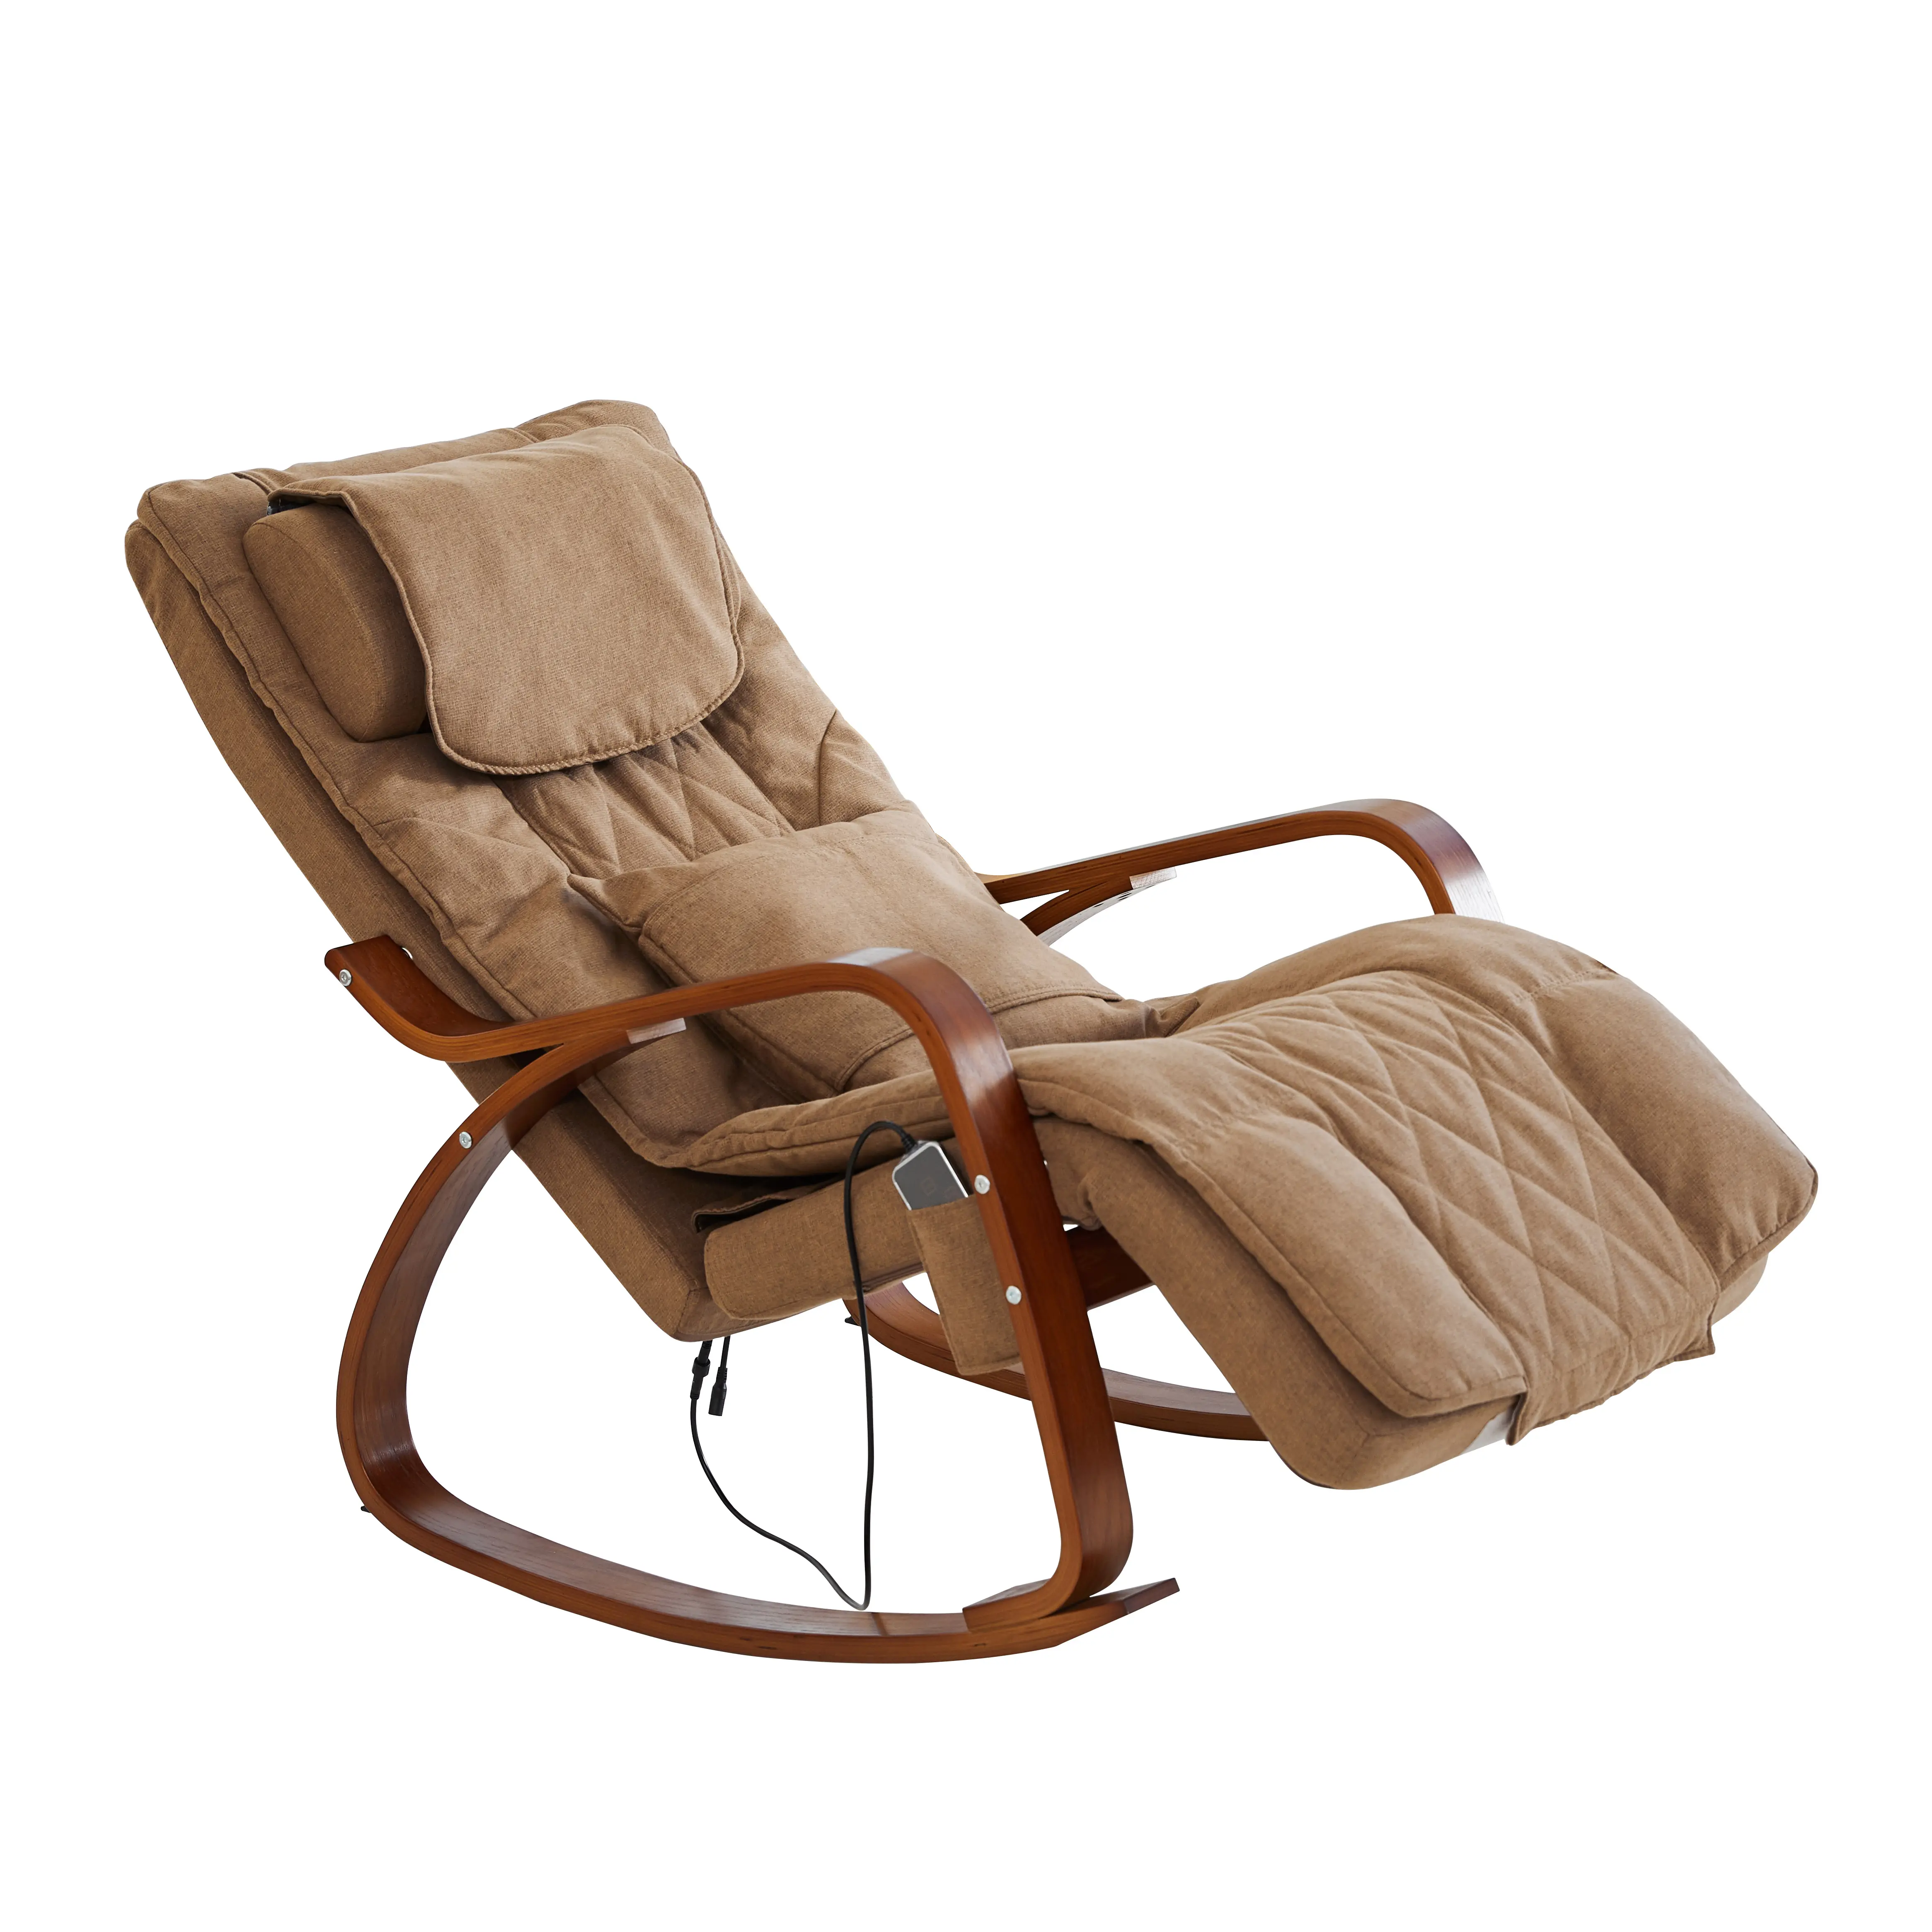 Распродажа, офисное и домашнее расслабляющее 3D кресло-качалка для массажа шиацу, рабочее кресло для сообщений